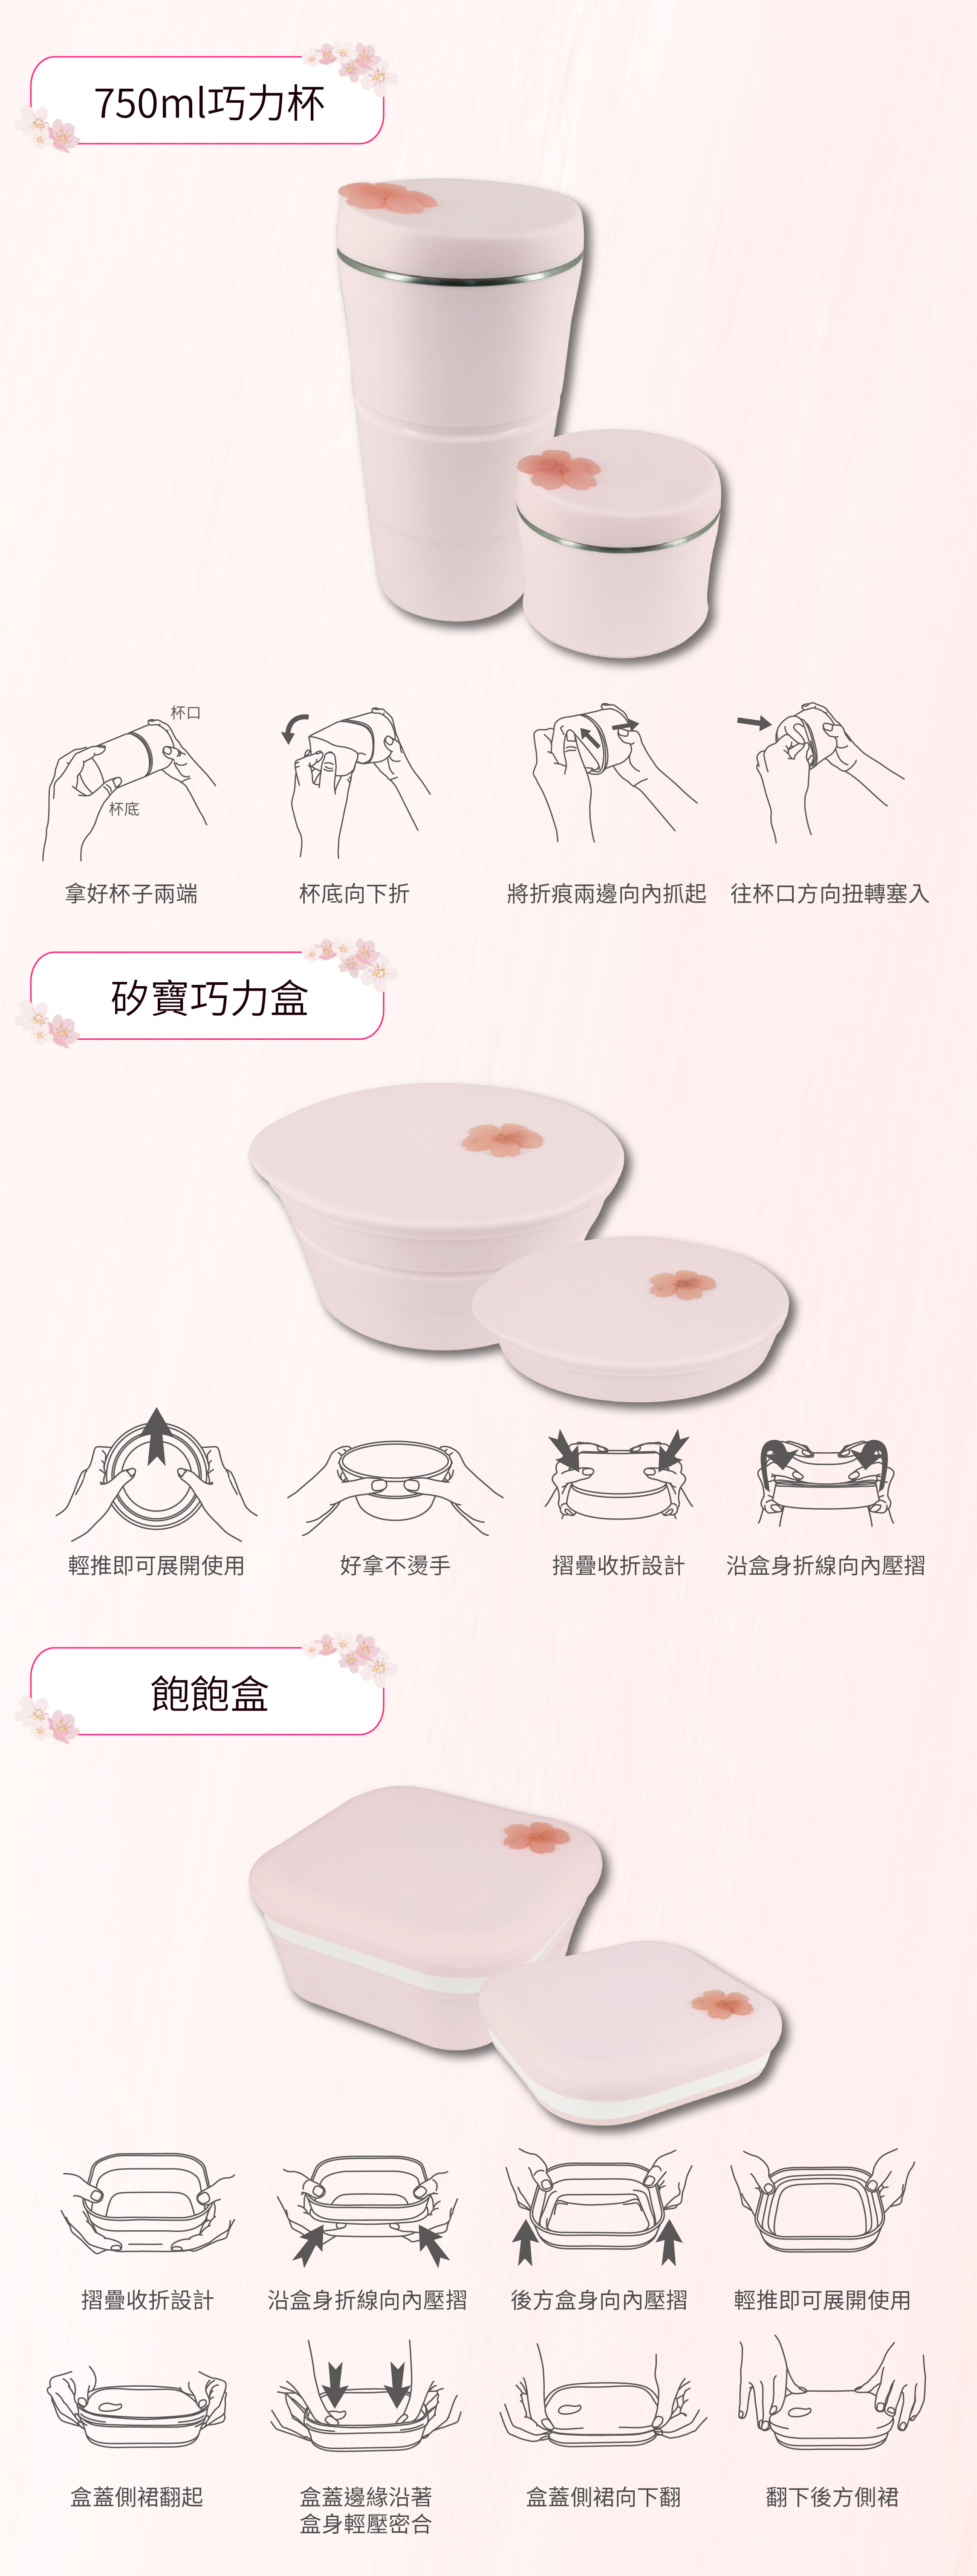 櫻花季產品說明圖-02